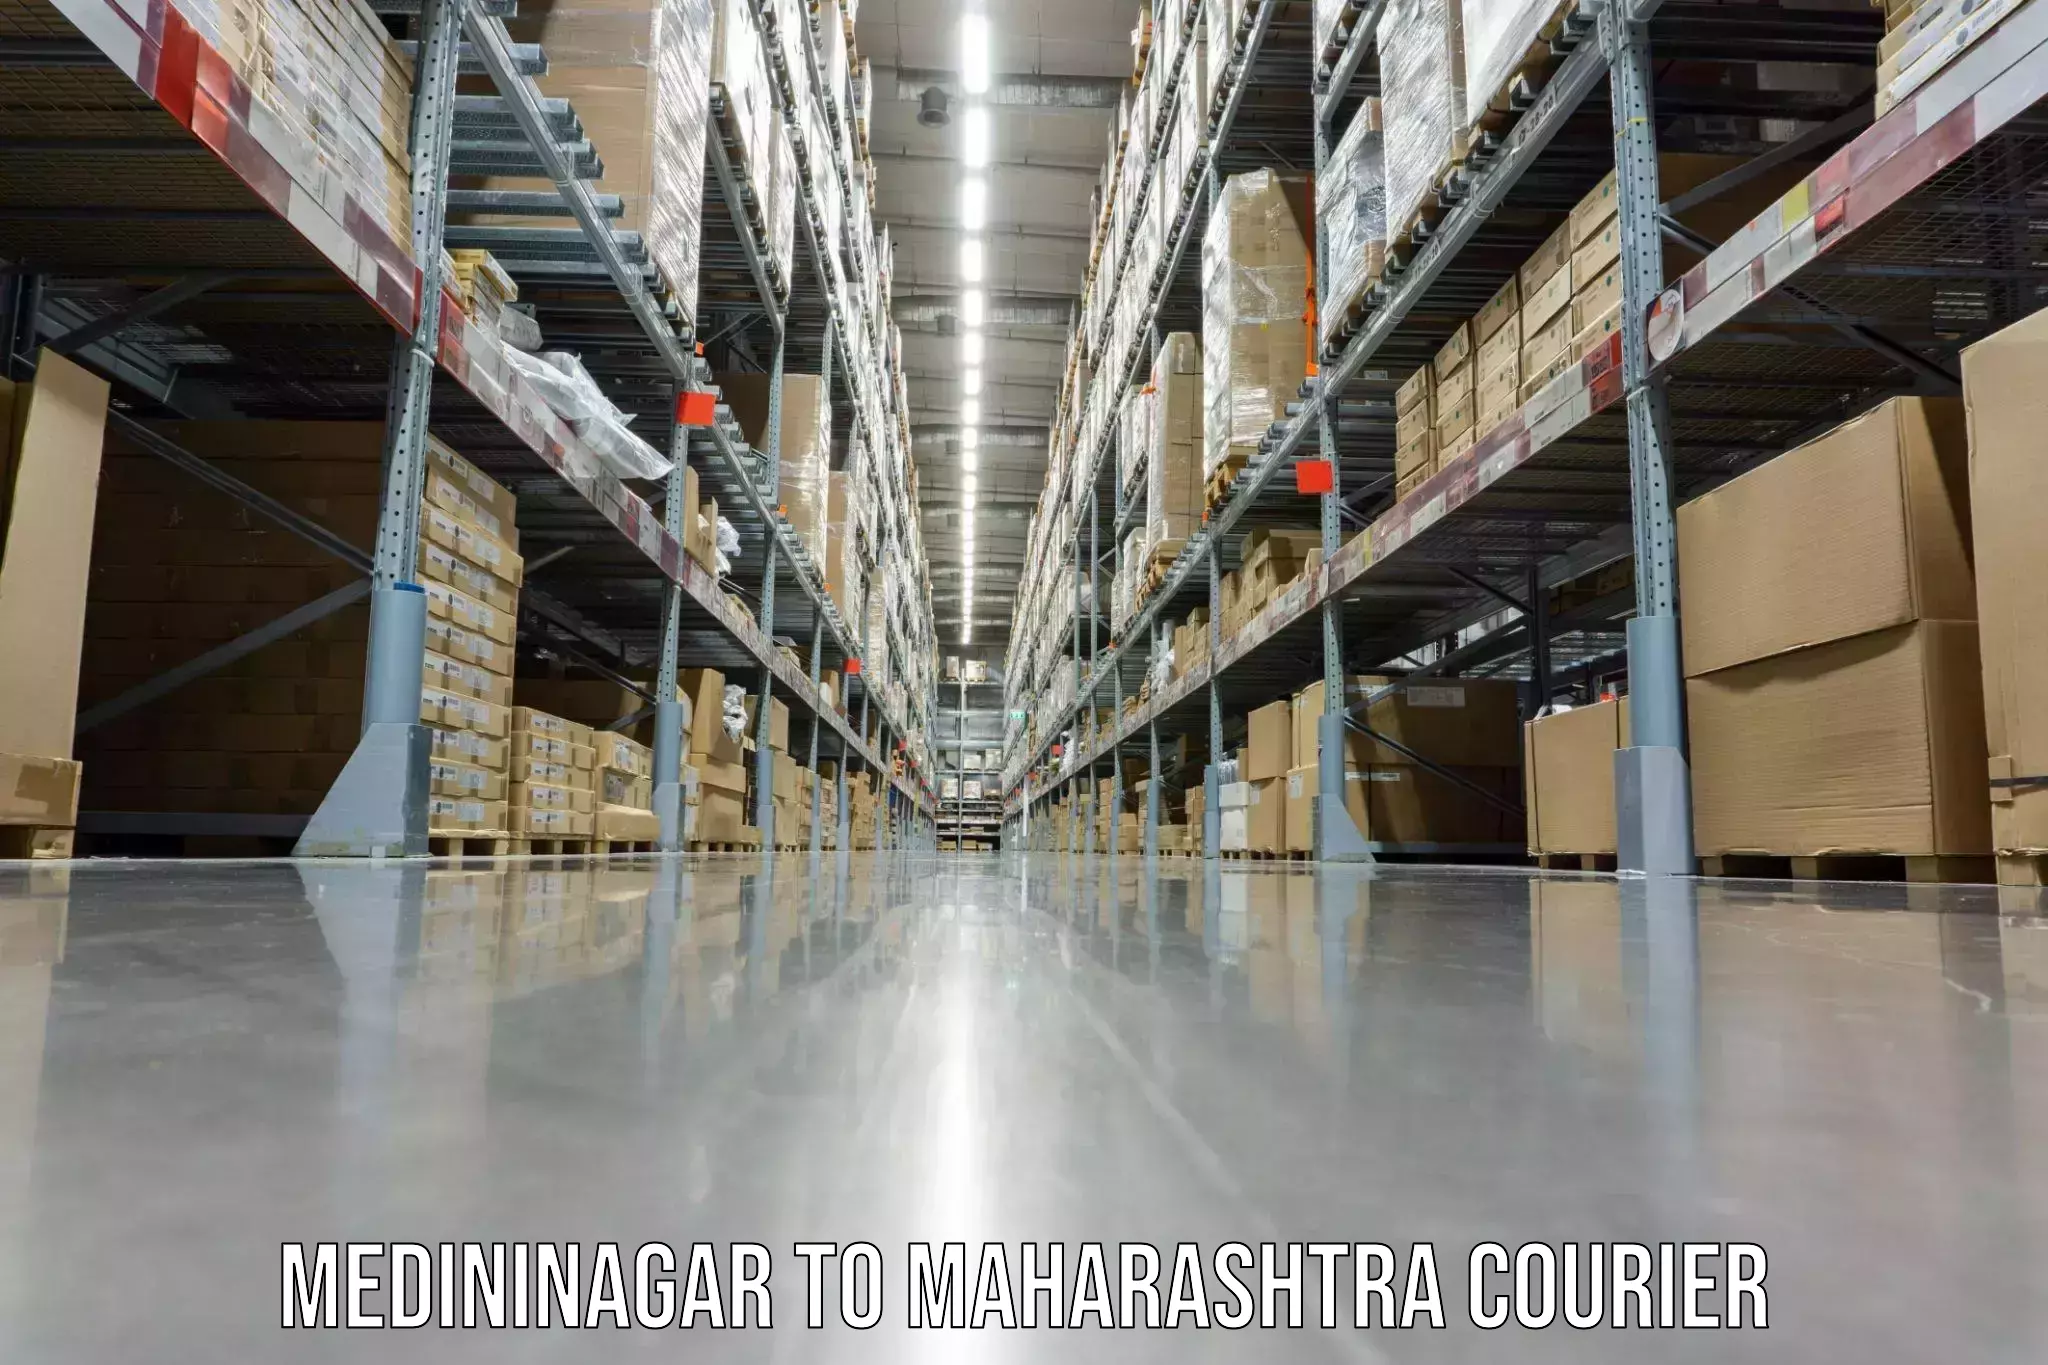 Specialized moving company Medininagar to Maharashtra